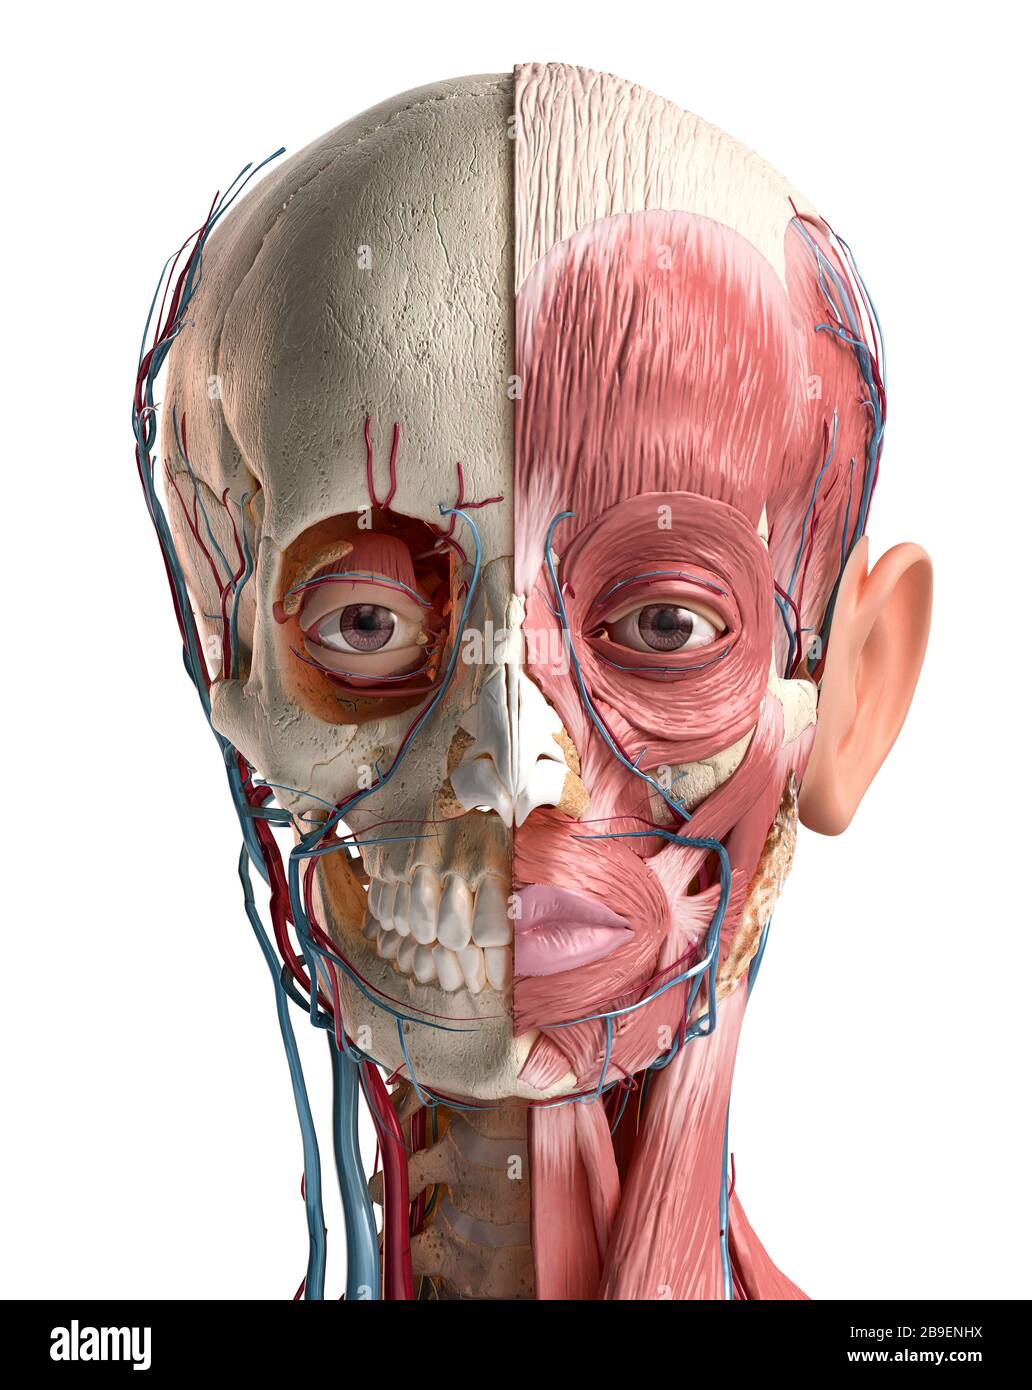 Anatomie de la tête humaine du crâne, des muscles du visage, des veines et des artères, fond blanc. Banque D'Images